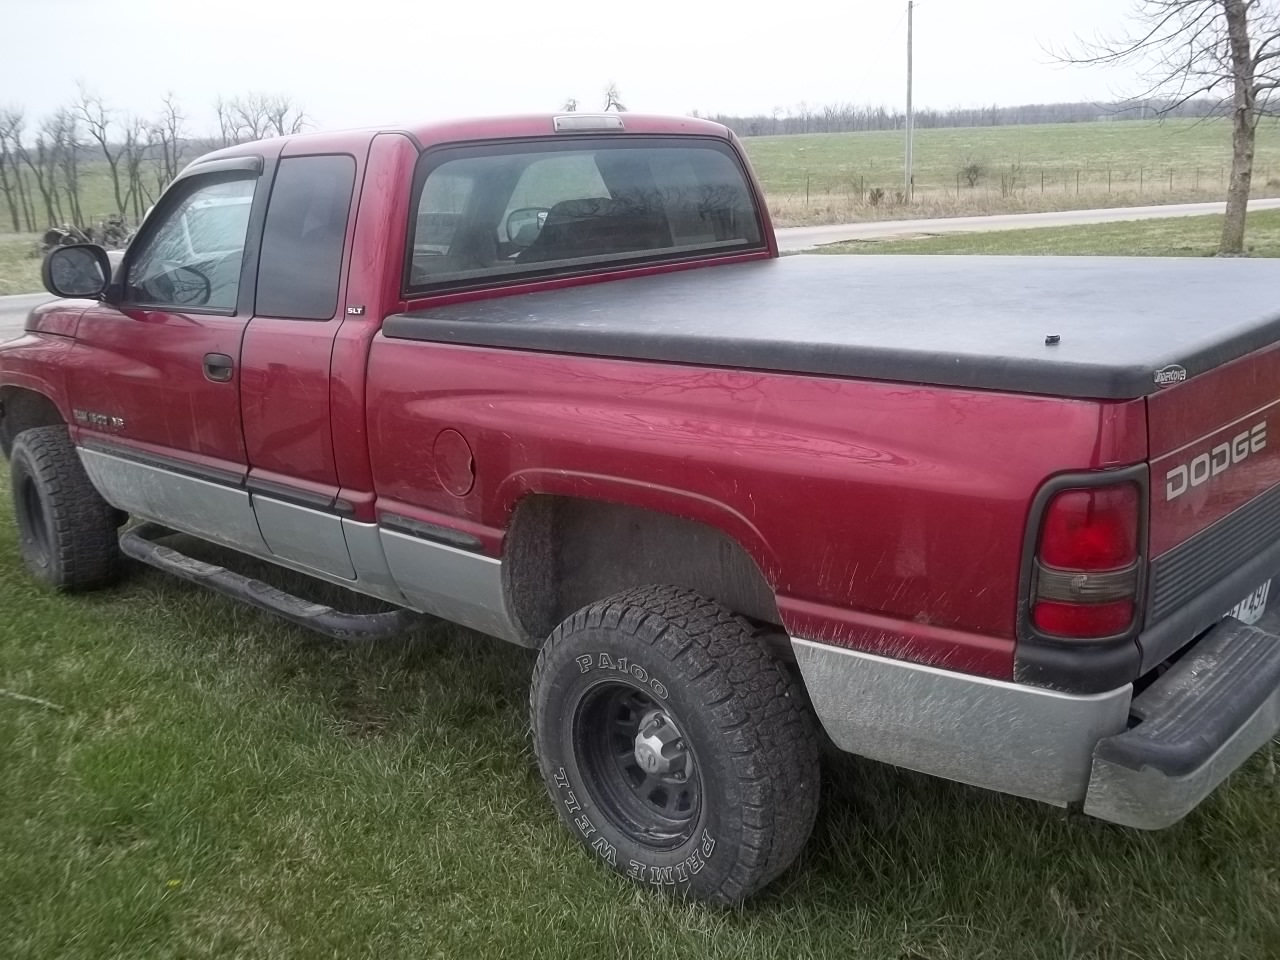 SW Missouri Observed Trials: '98 Dodge Ram